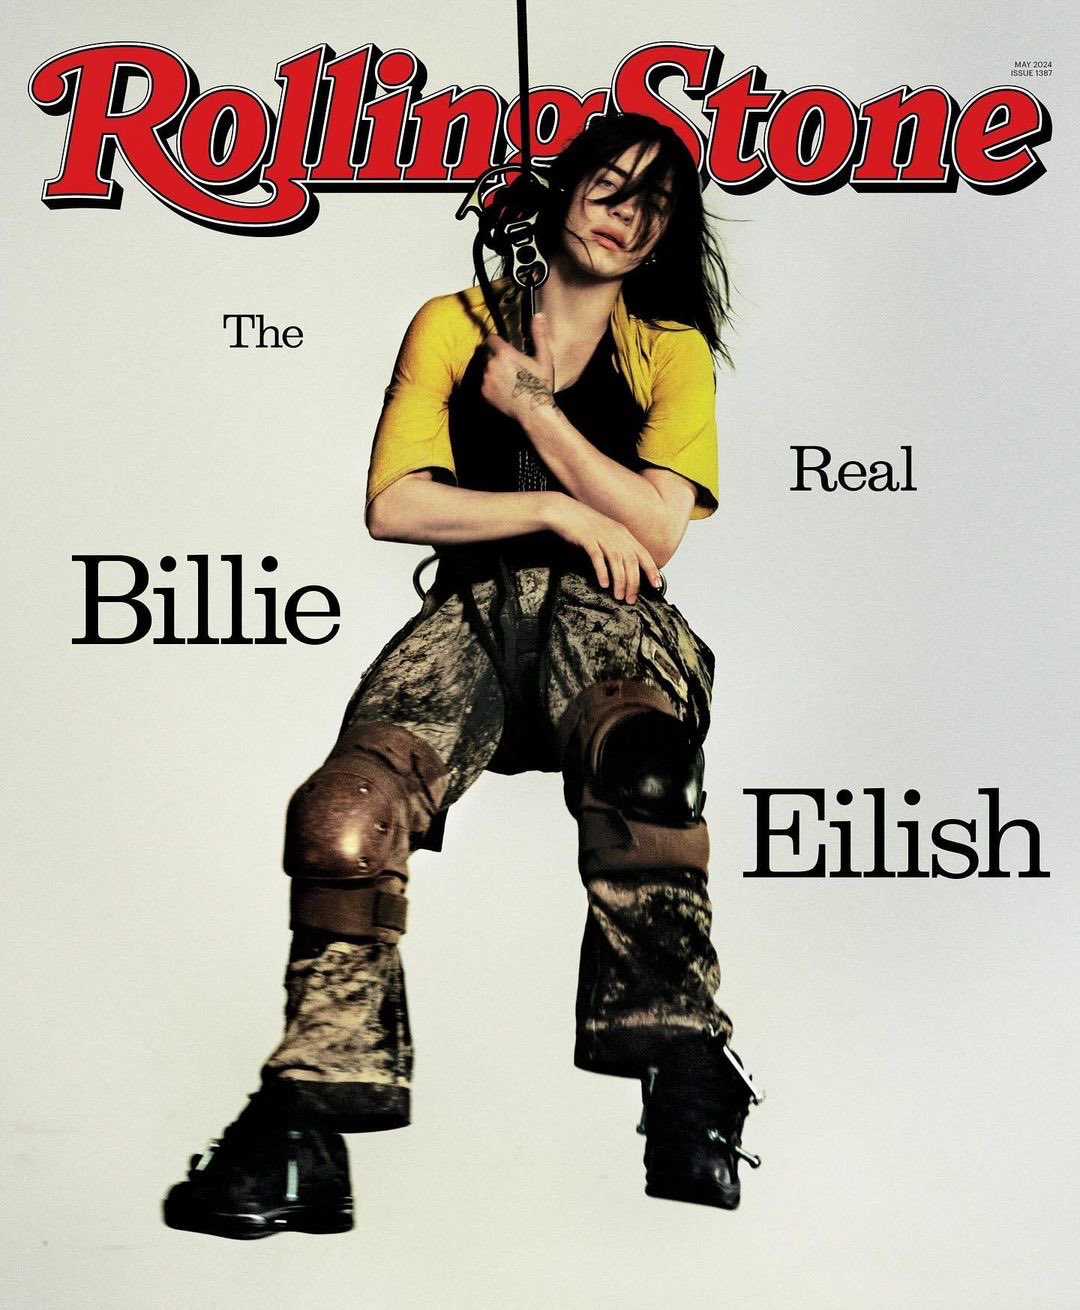 https://www.billieforum.com/media/billie_rolling_stone_202405_cover-jpg.5466/full